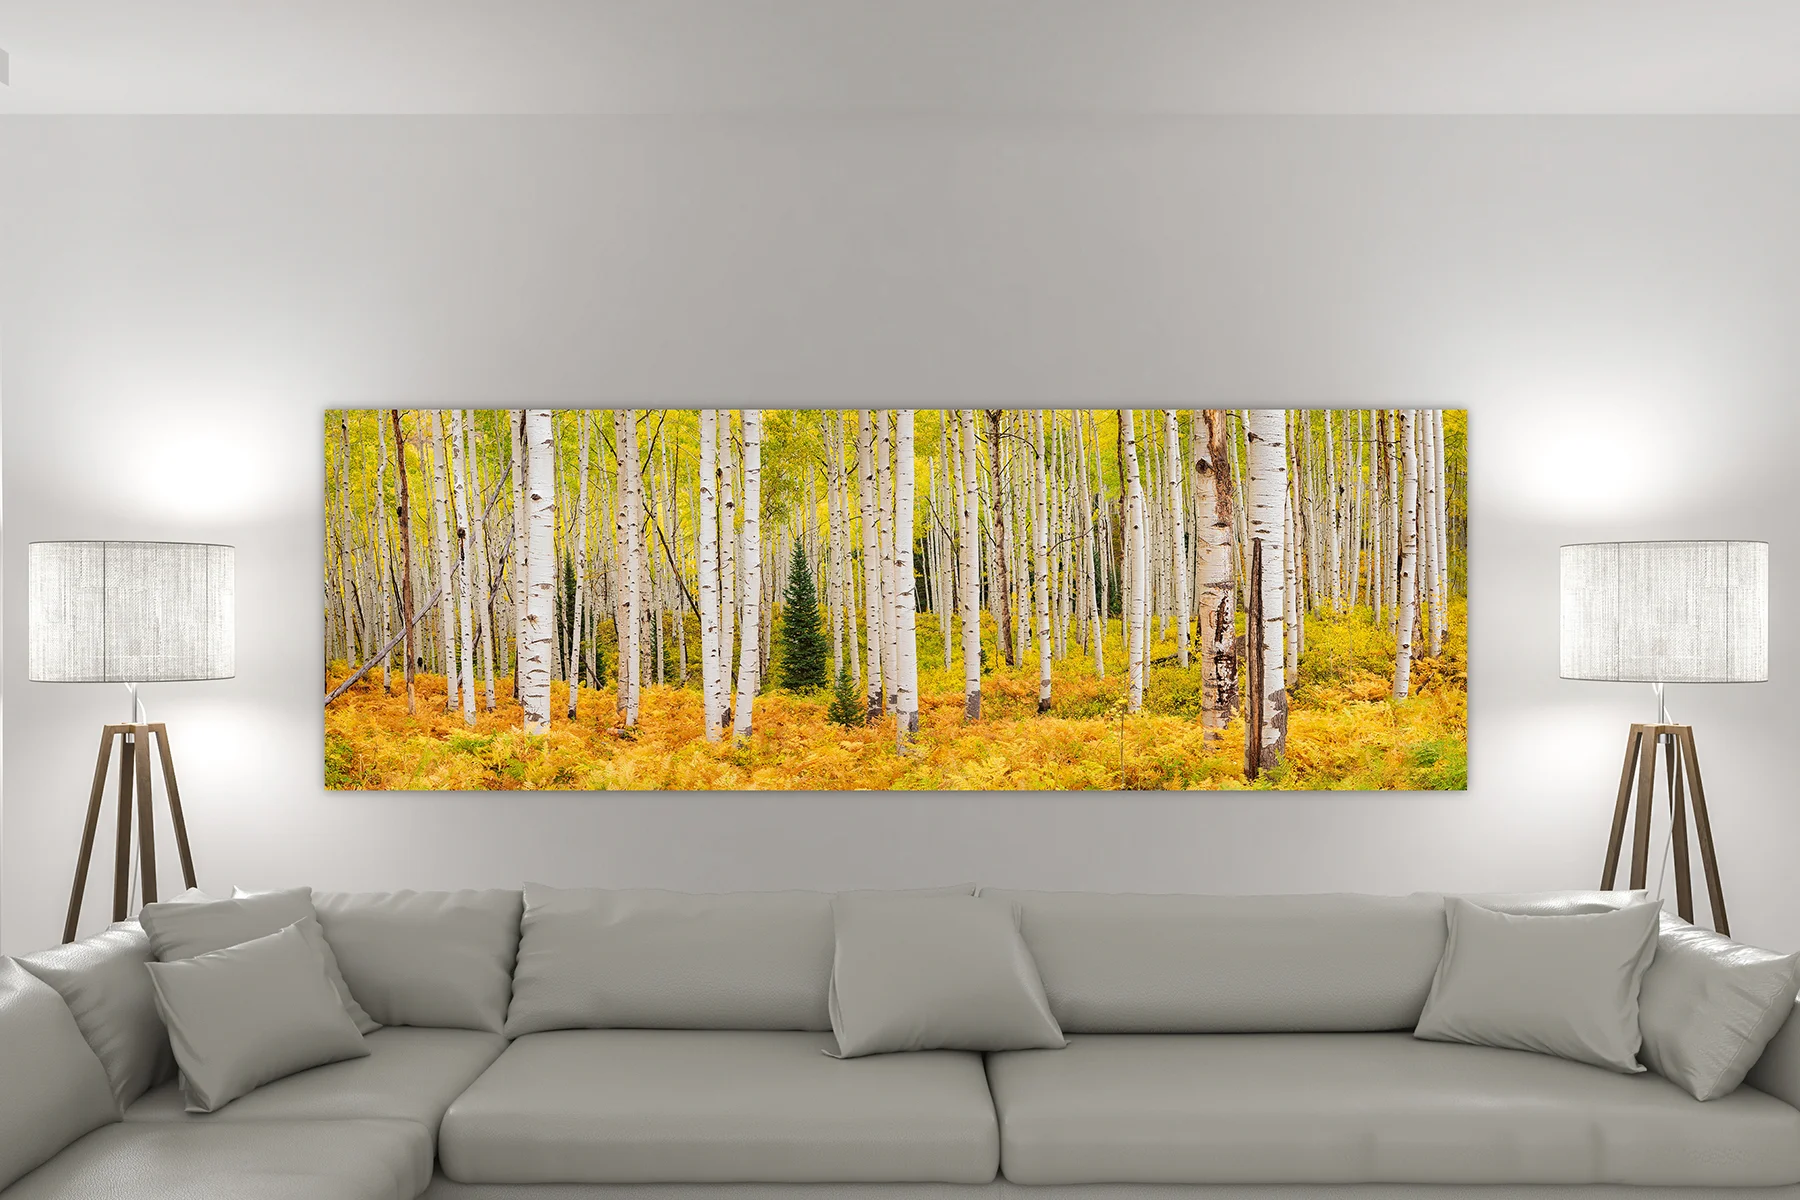 A huge aspen forest wall art print on a living room wall - Gintchin Fine Art